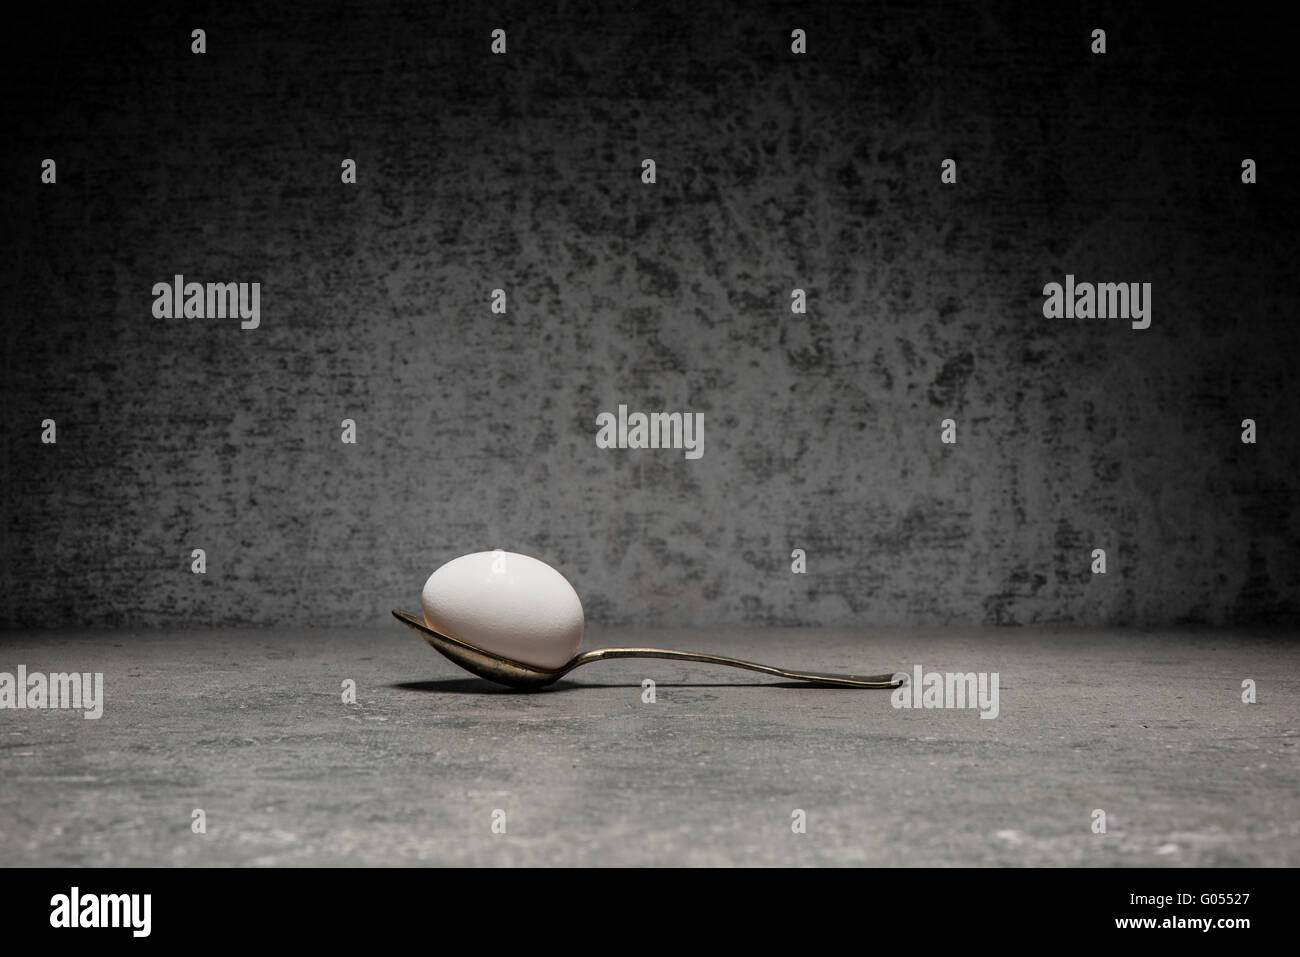 Uovo e cucchiaio ancora in vita. Immagine concettuale con la semplicità e la copia dello spazio. Foto Stock